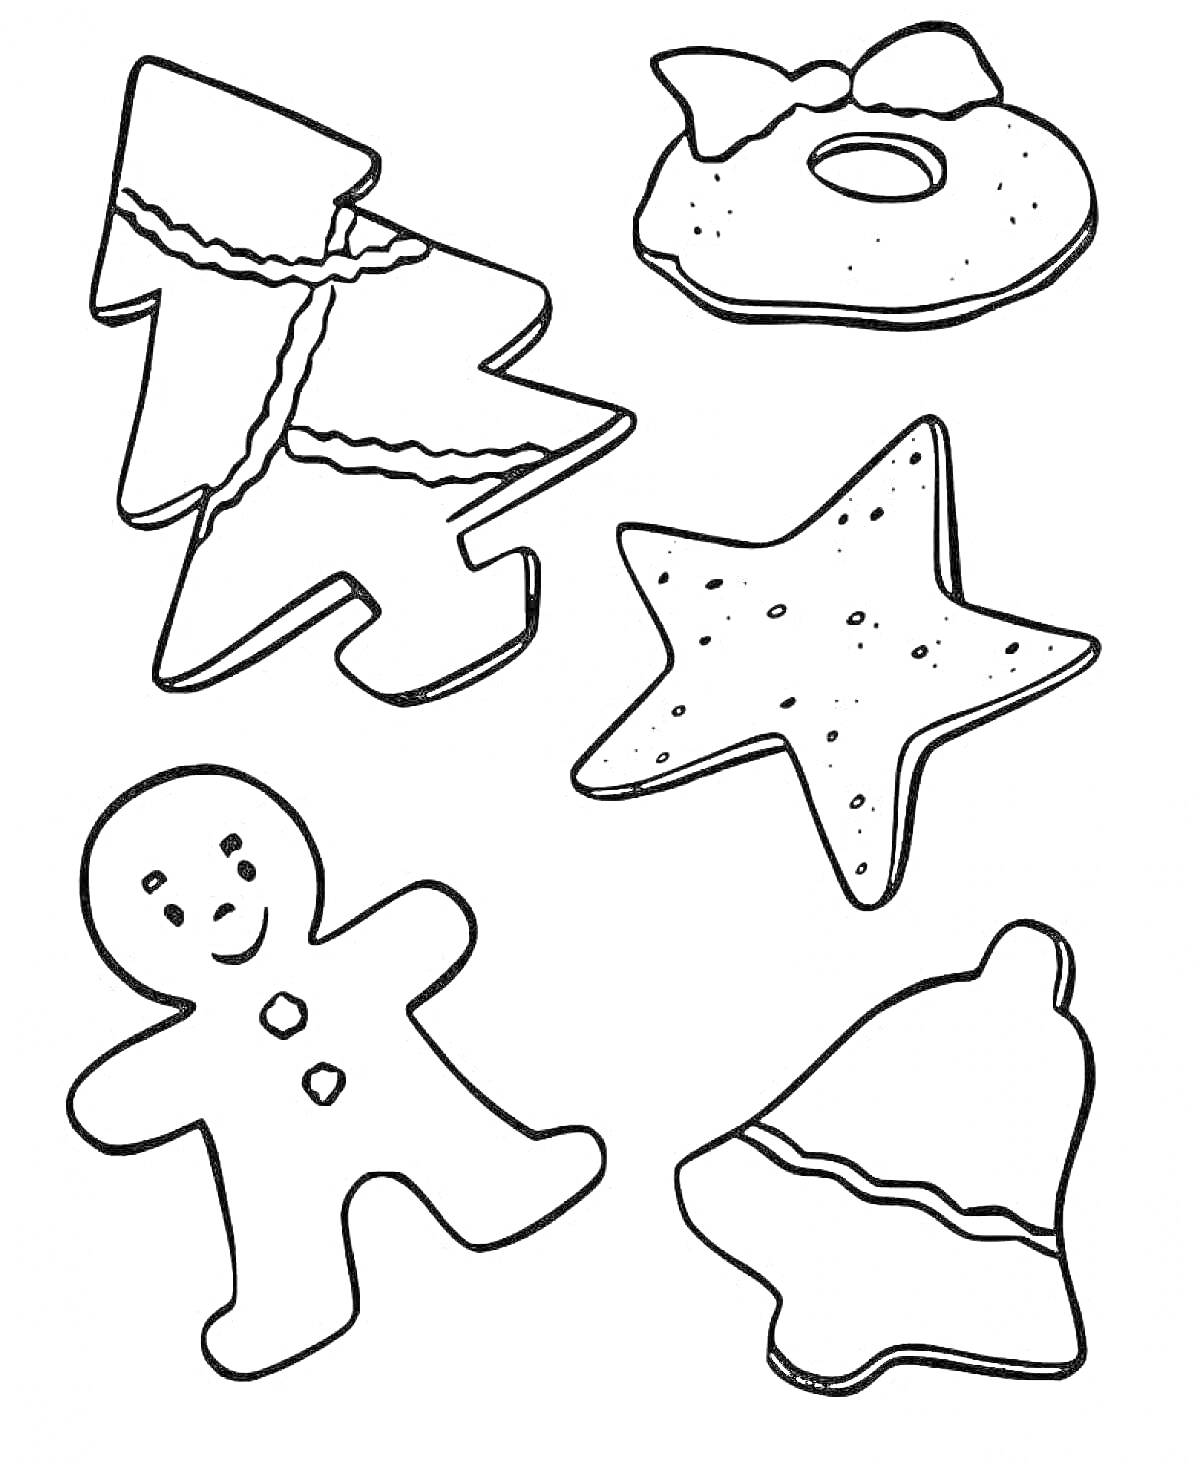 Раскраска Ёлка, пончик с бантиком, звезда, человечек, колокольчик